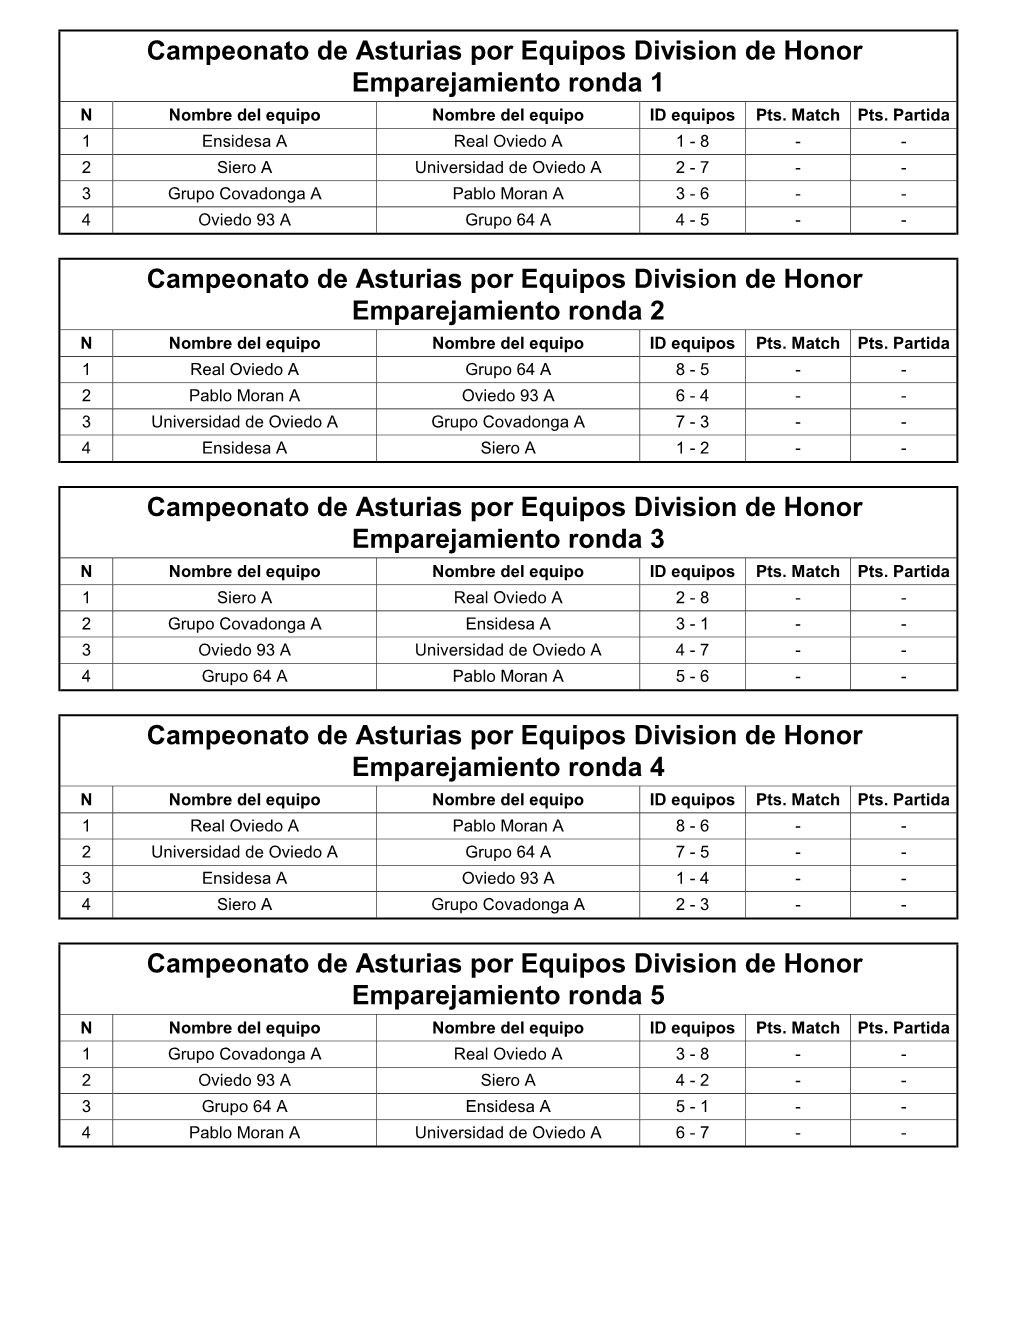 Campeonato De Asturias Por Equipos Primera 2019 Emparejamiento Ronda 1 N Nombre Del Equipo Nombre Del Equipo ID Equipos Pts